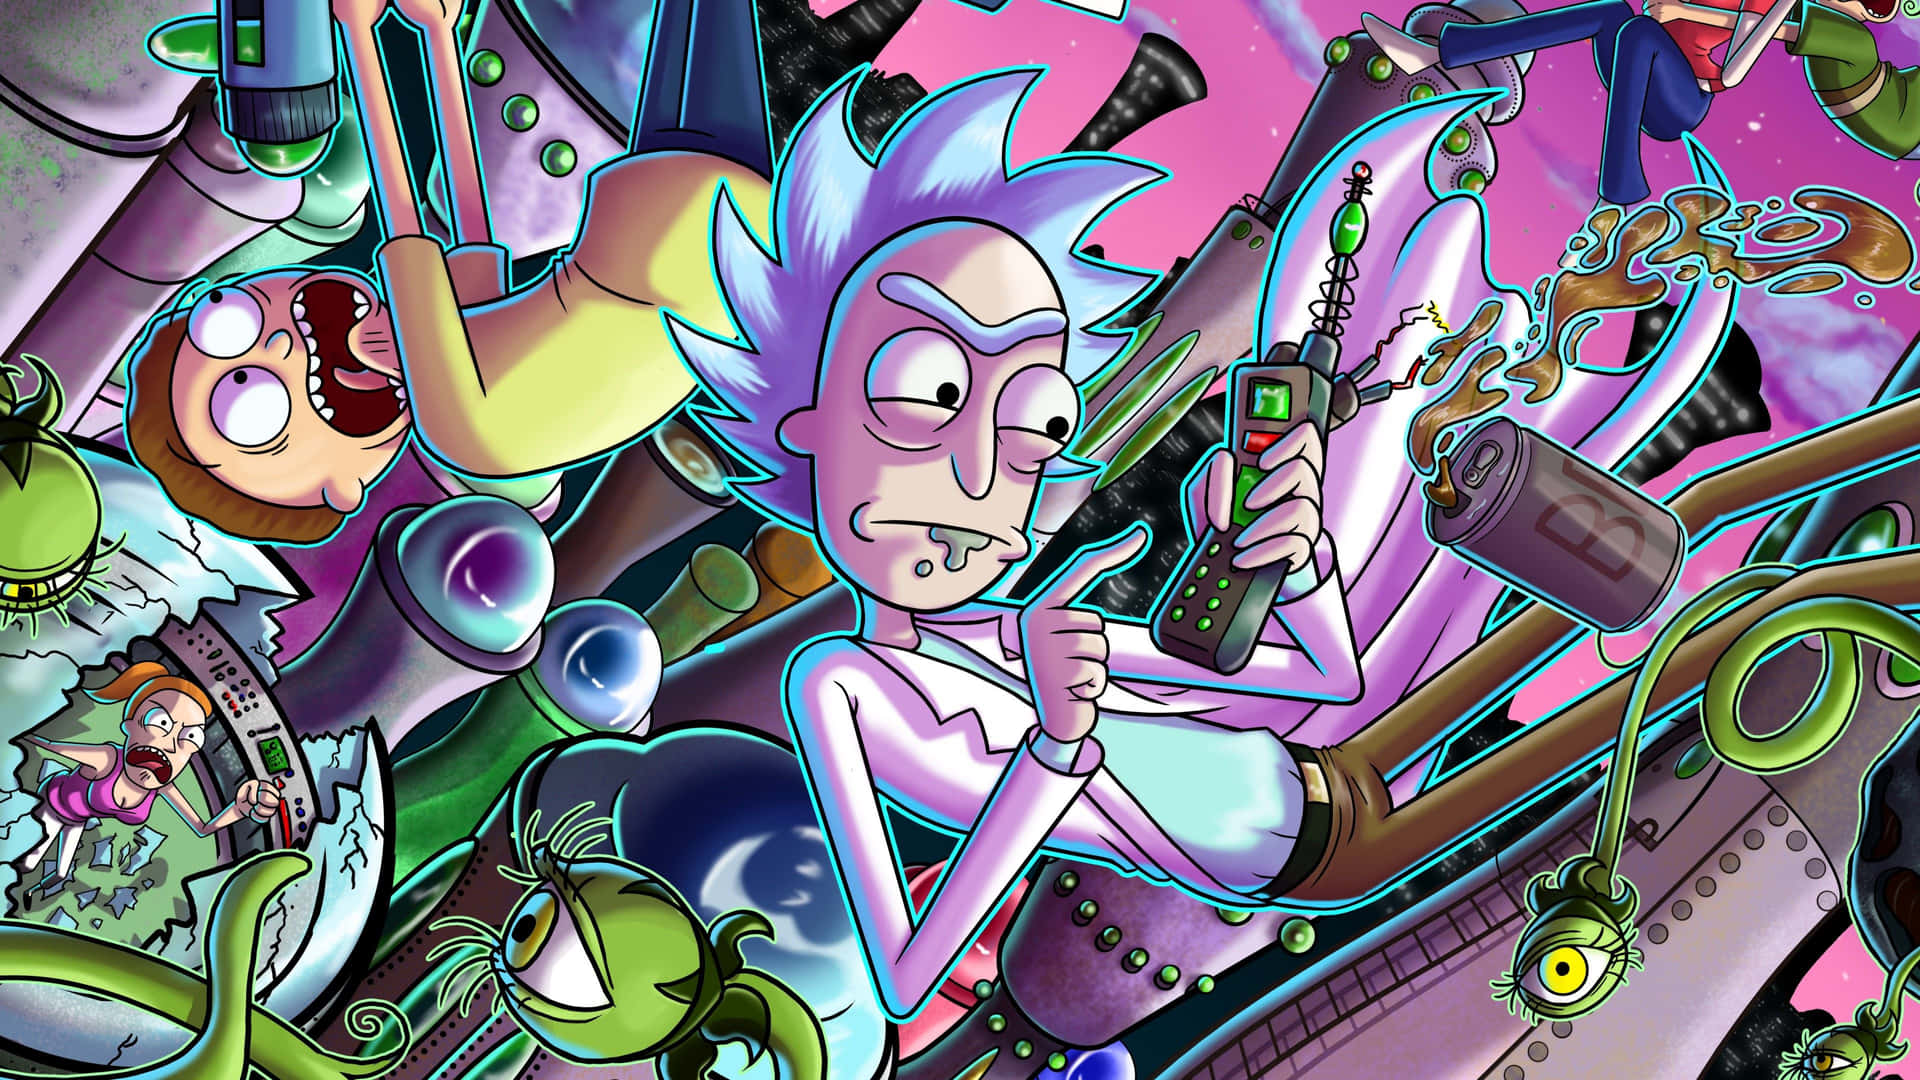 Xboxpfp Rick And Morty Blir Din Nya Bakgrundsbild På Datorn Eller Mobilen! Wallpaper